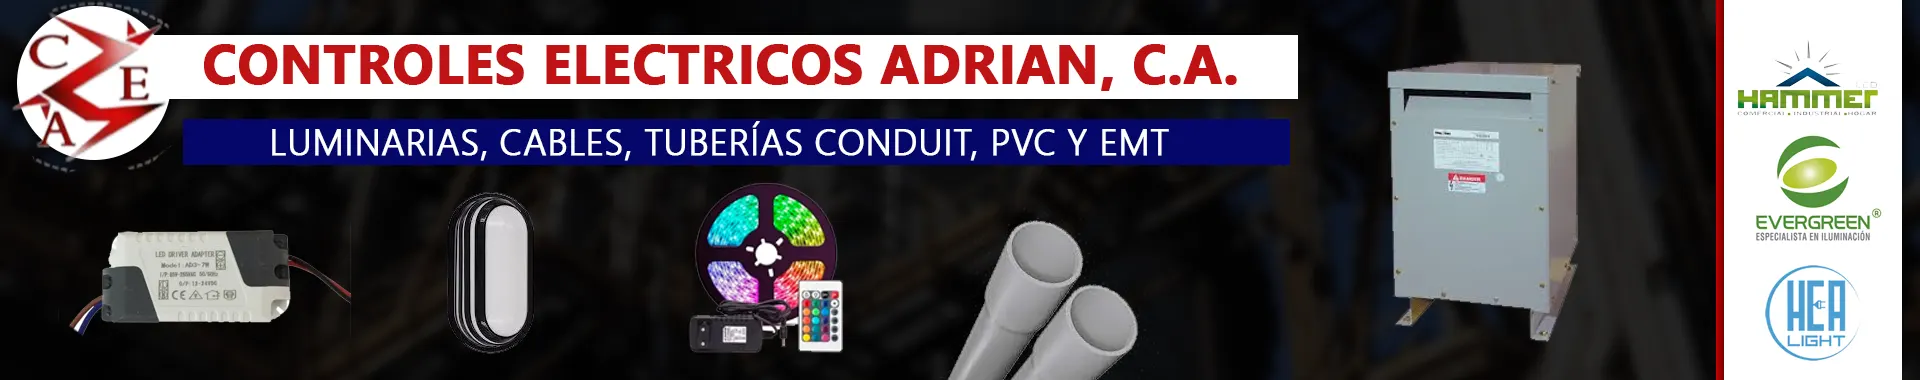 Imagen 3 del perfil de Controles Eléctricos Adrián